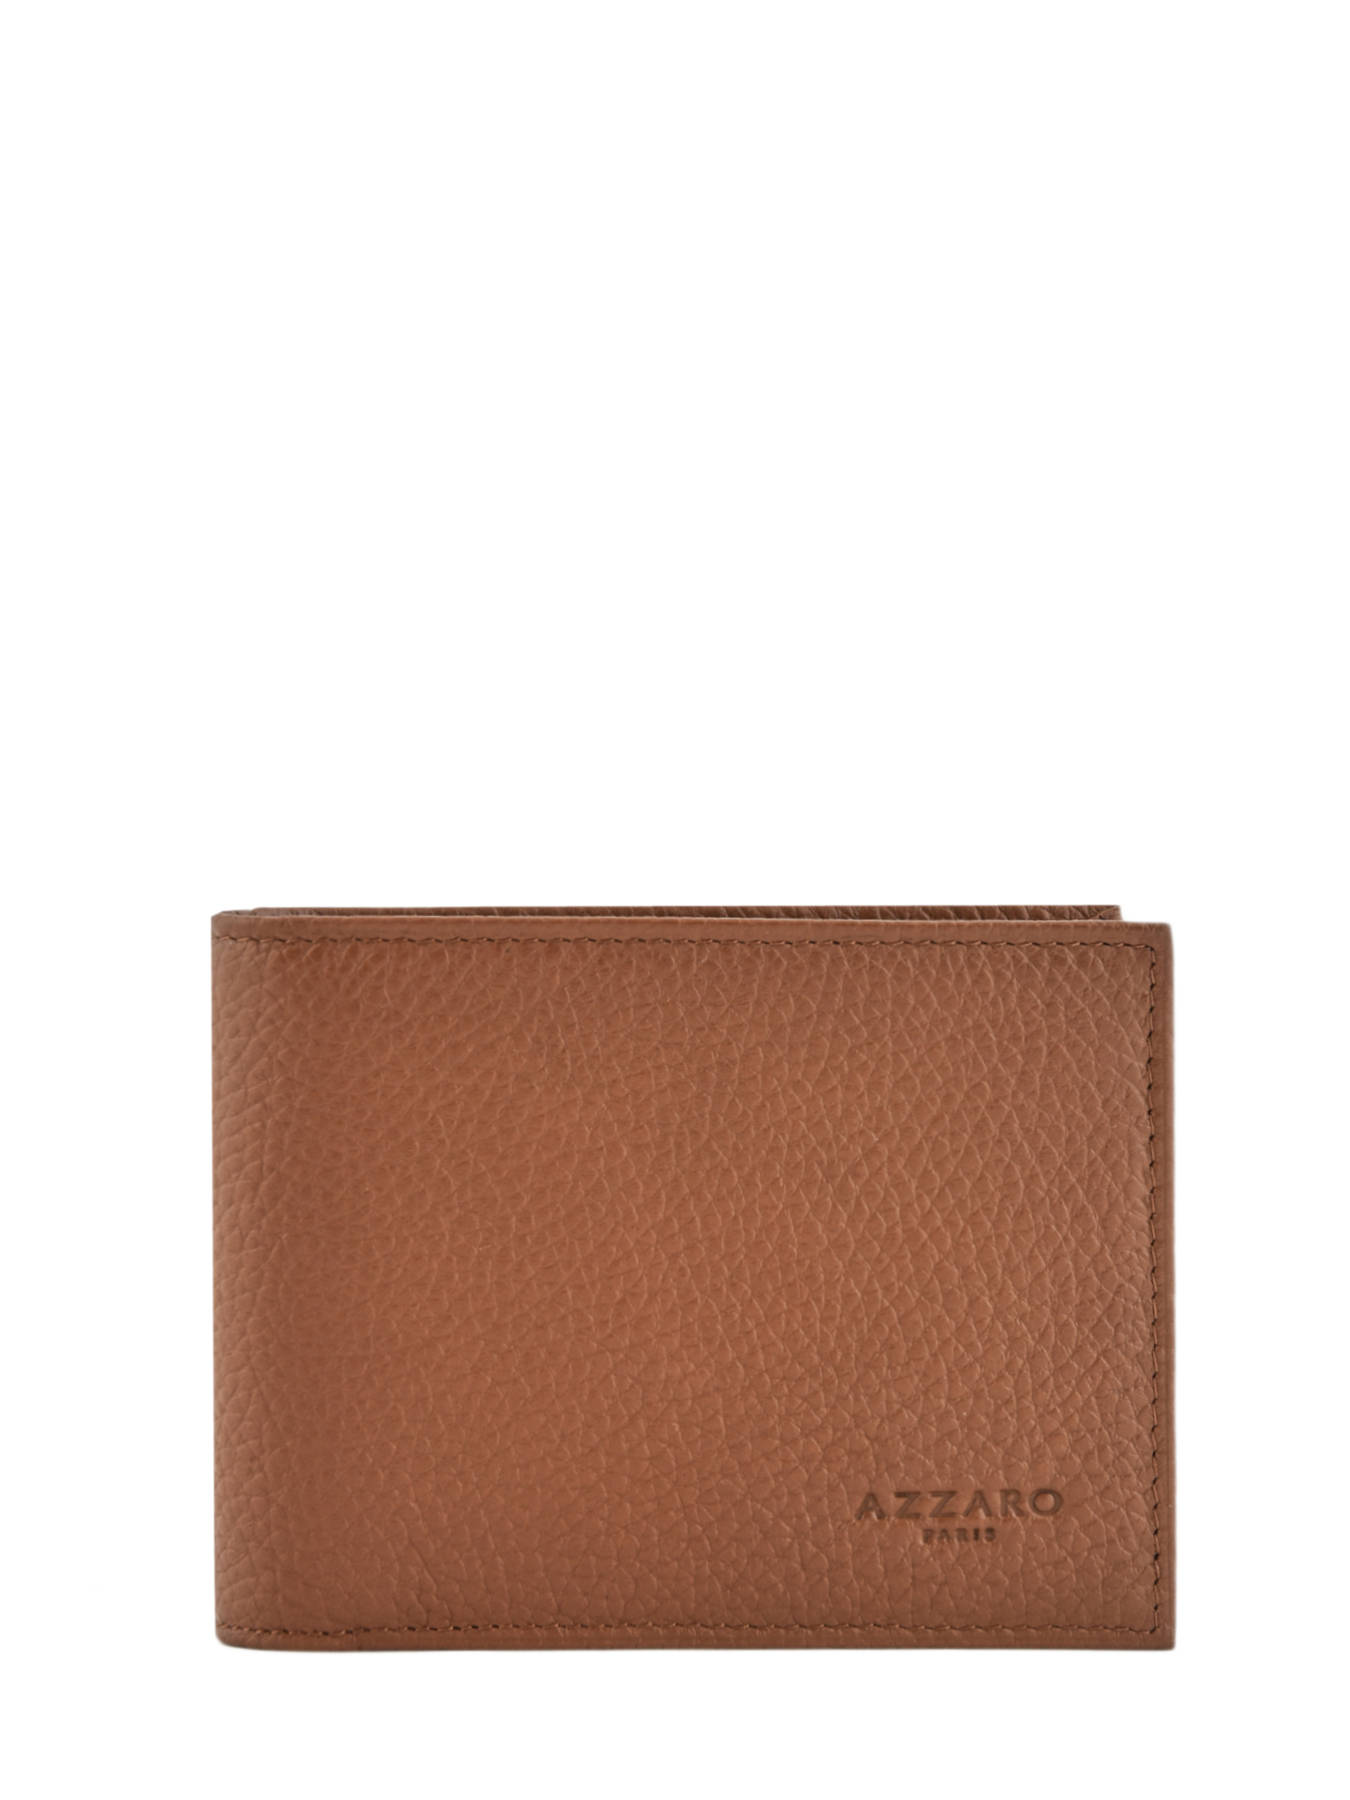 Azzaro Wallet AZ.907129 - best prices